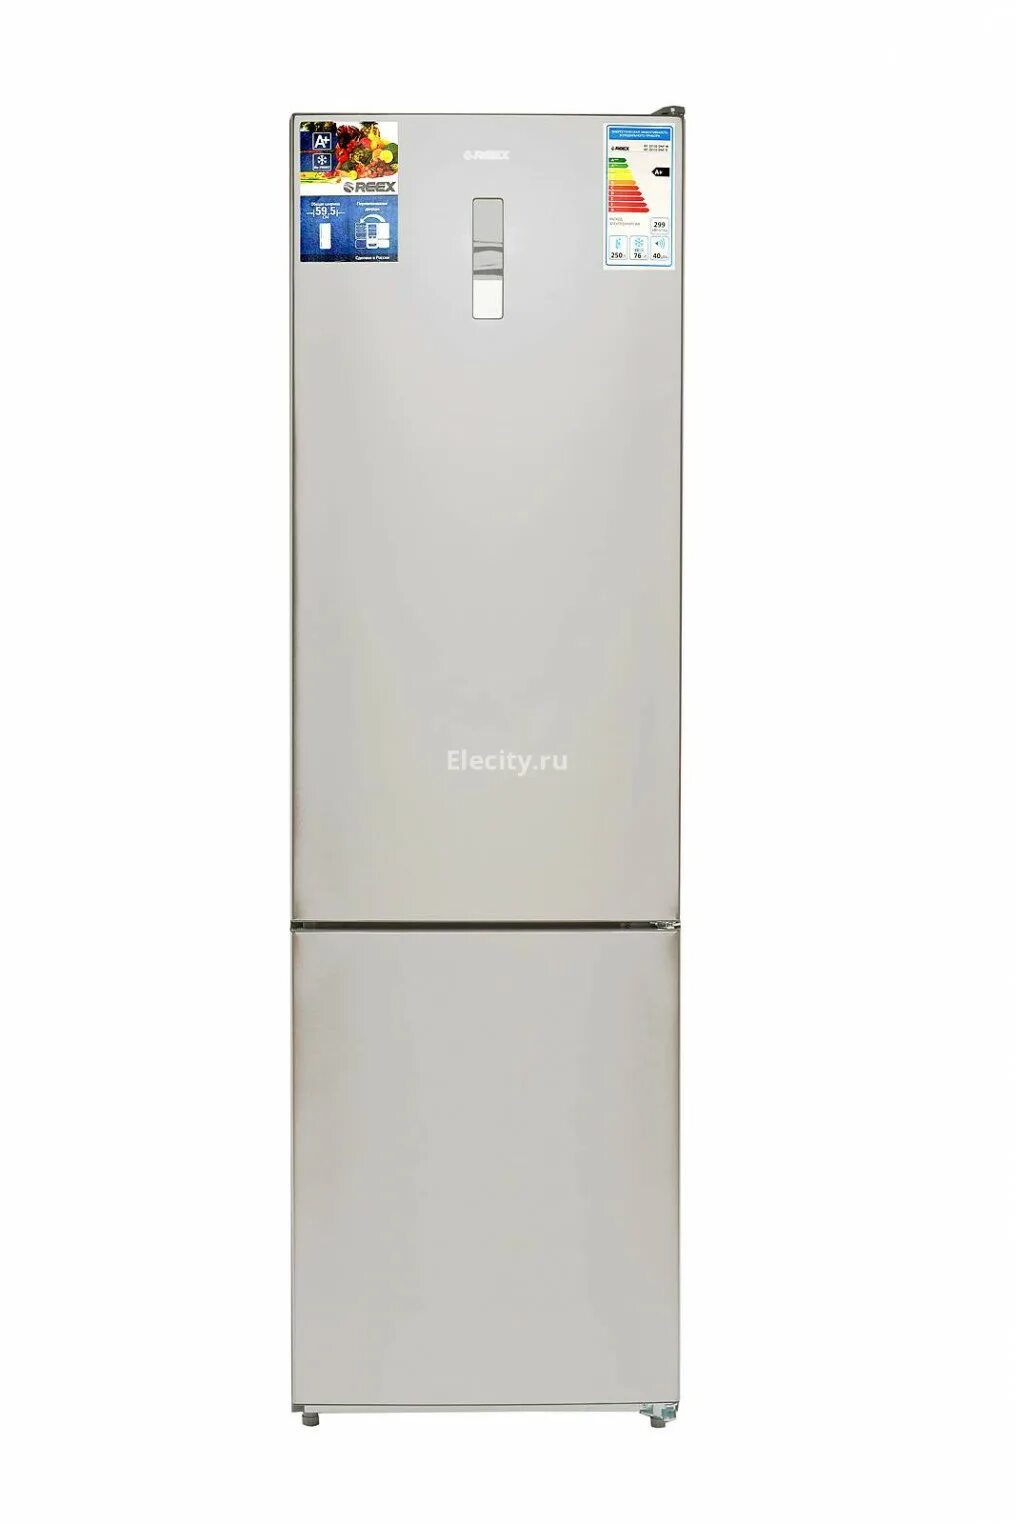 REEX холодильники. Candy холодильник 90см. Холодильник сони двухкамерный.